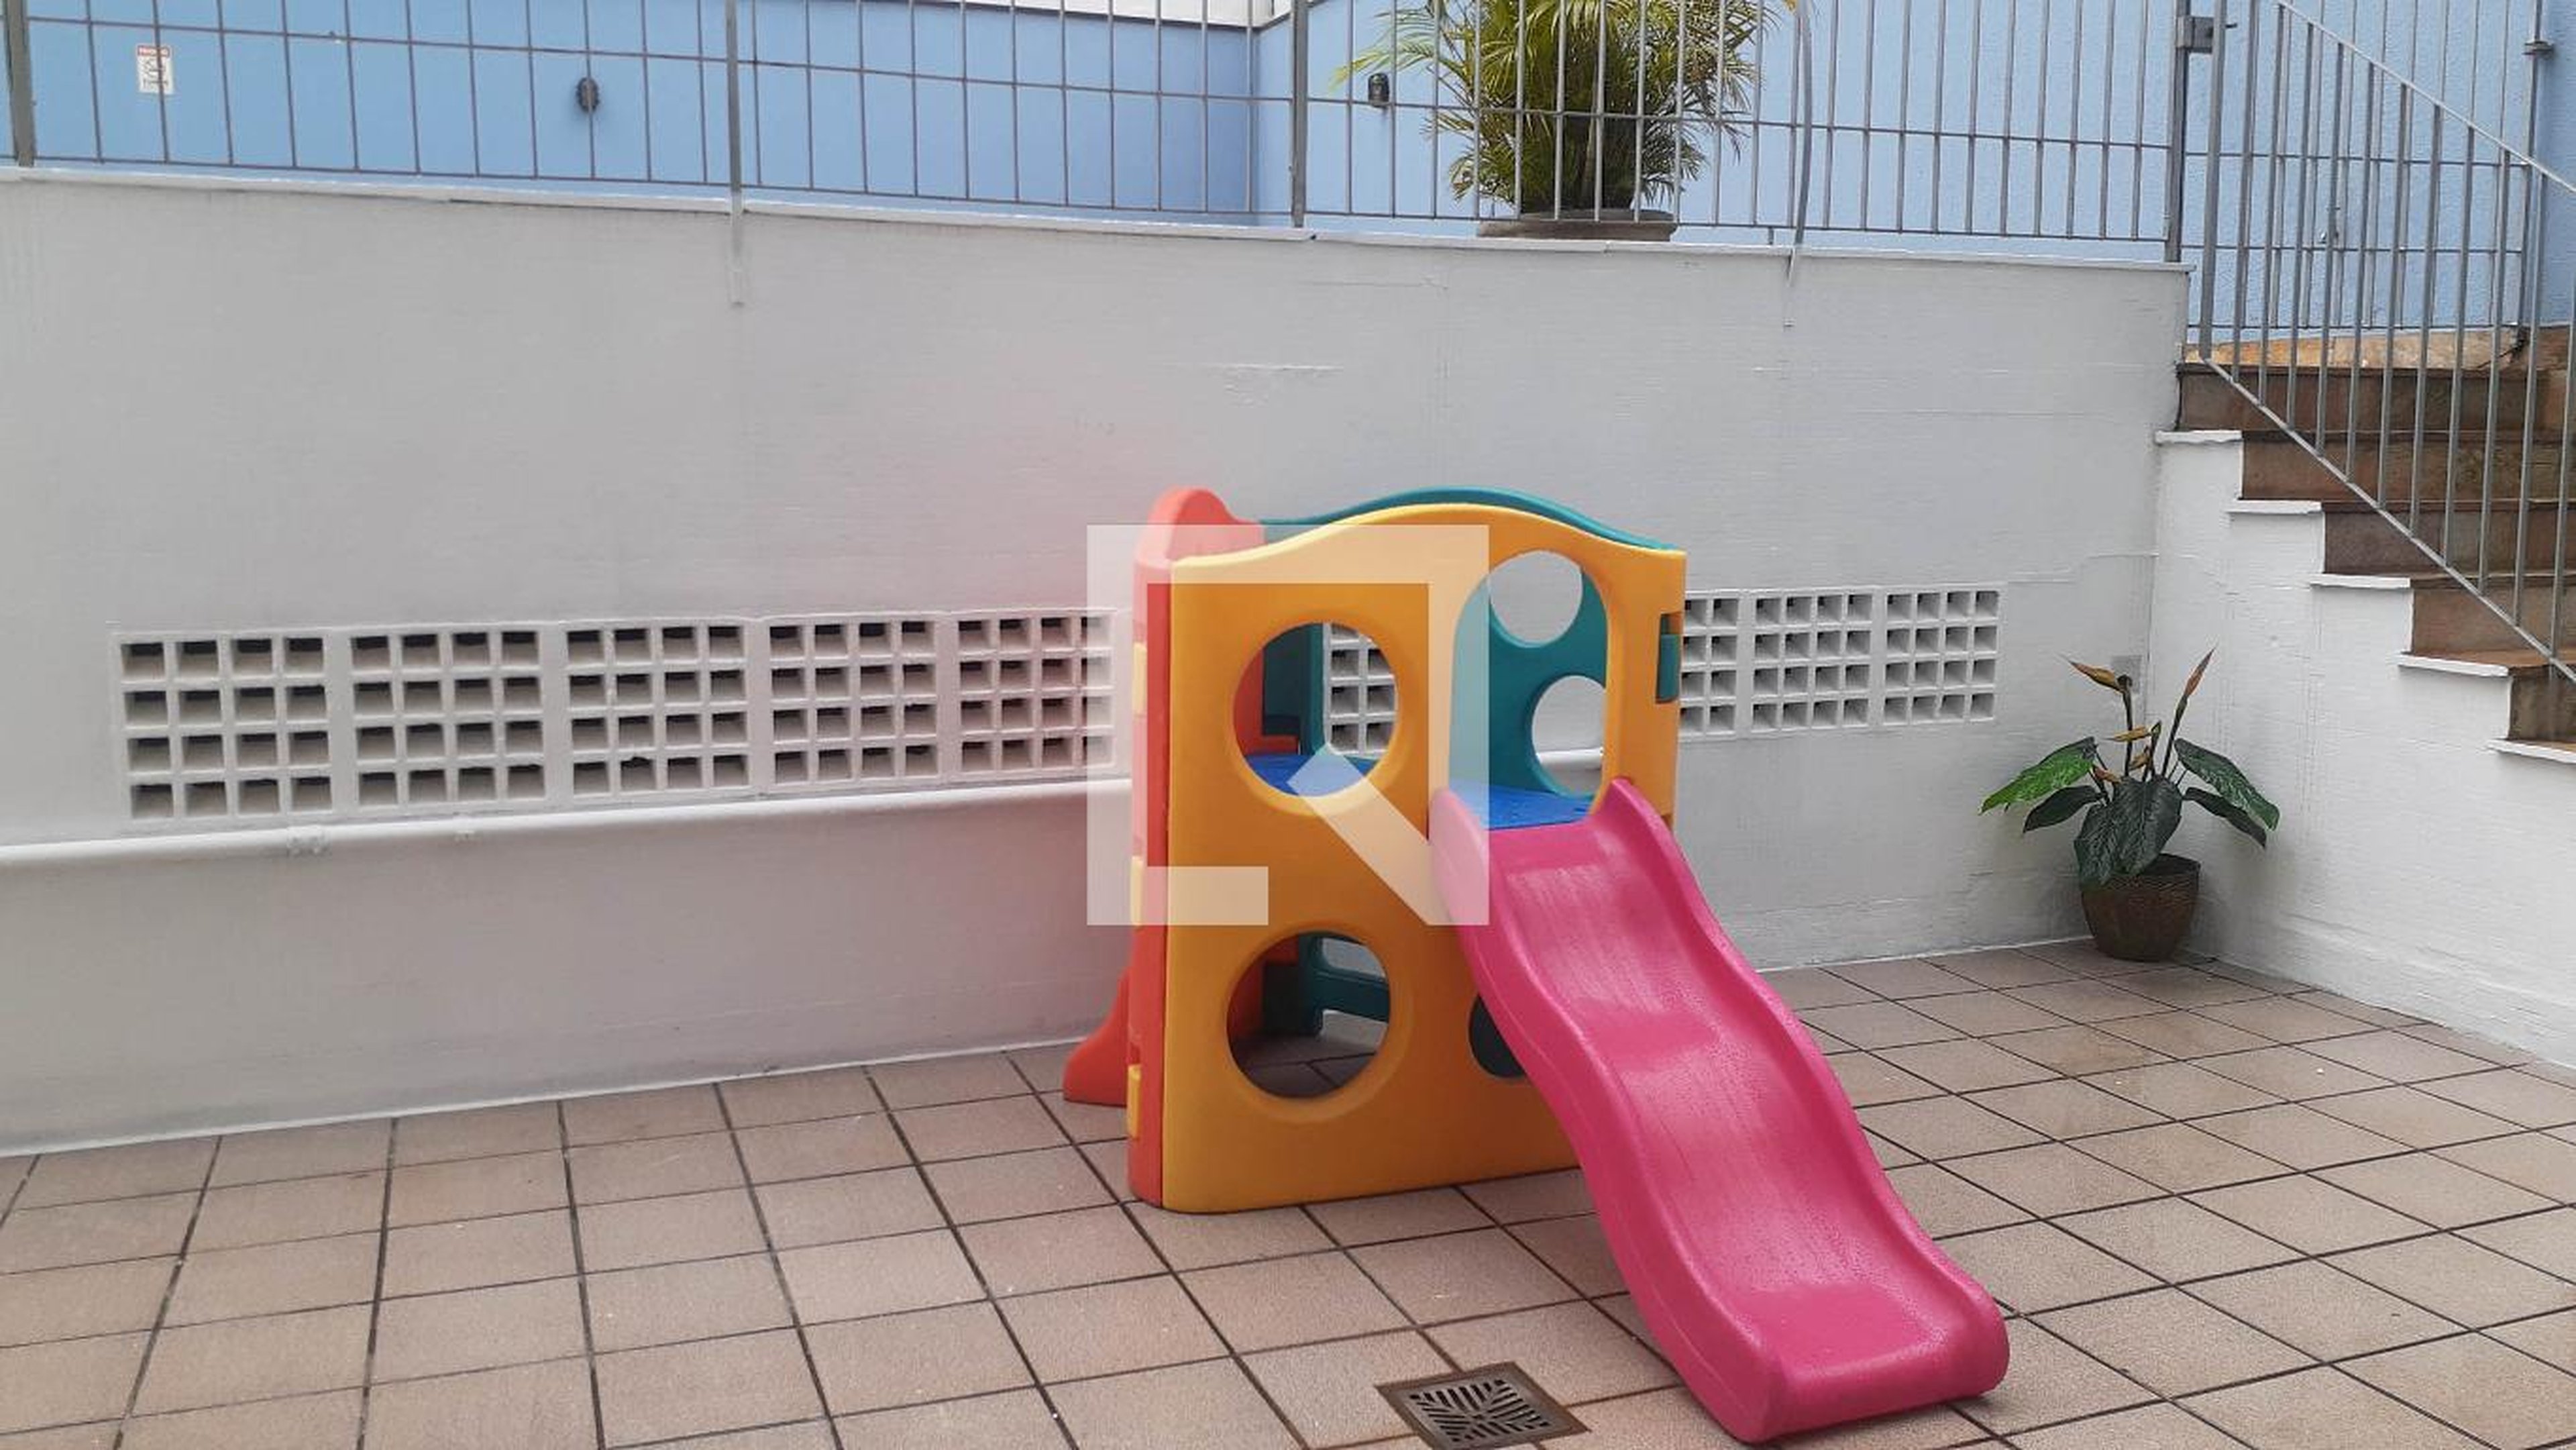 Playground - Pedro José Lourenzini